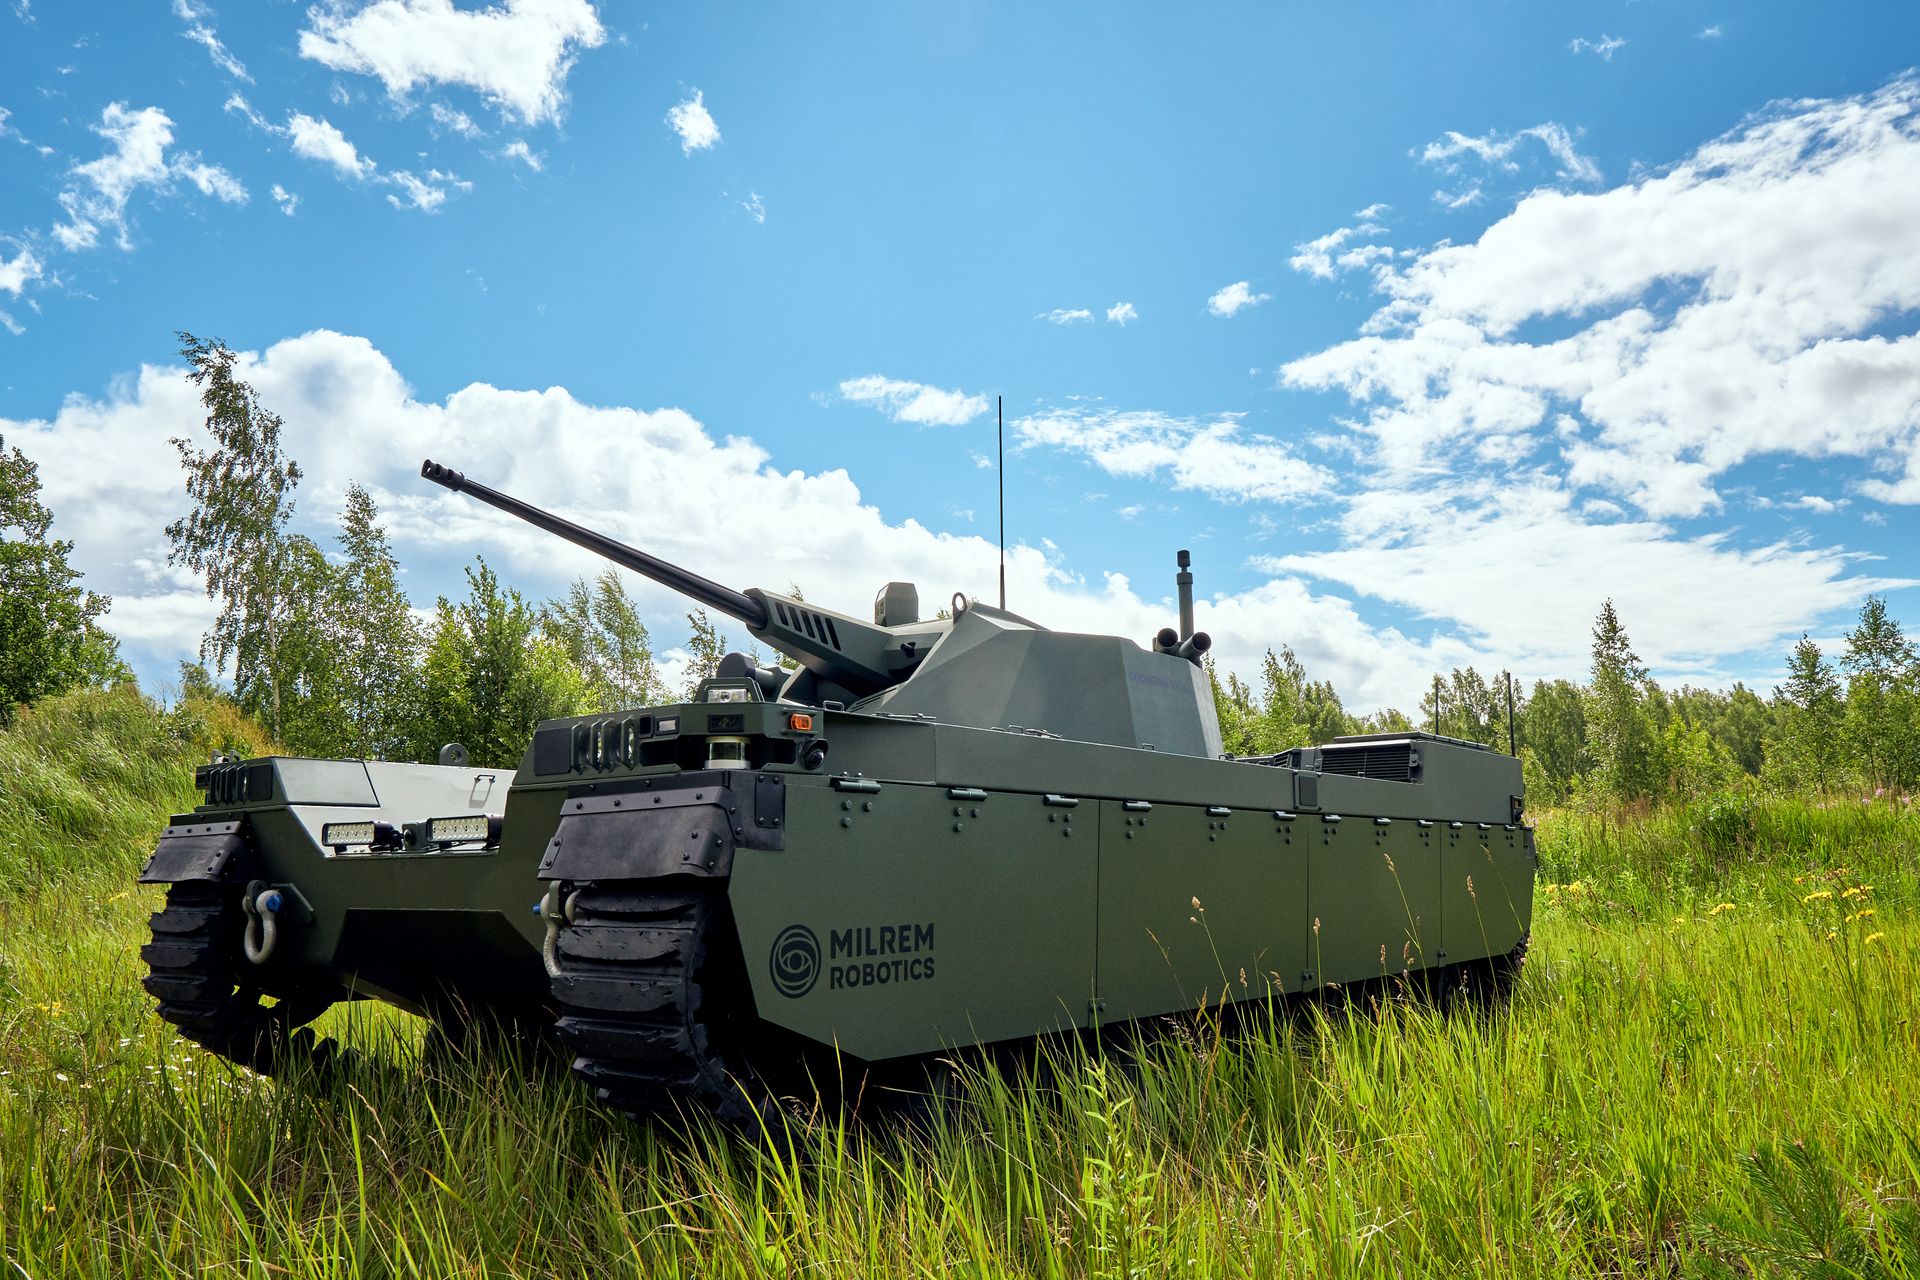 Il Type-X Combat realizzato dalla società Milrem Robotics basata in Estonia è destinato a supportare le unità meccanizzate e a fungere da spalla ai carri armati principali: il veicolo può essere equipaggiato con diversi autocannoni da 25 a 50 millimetri